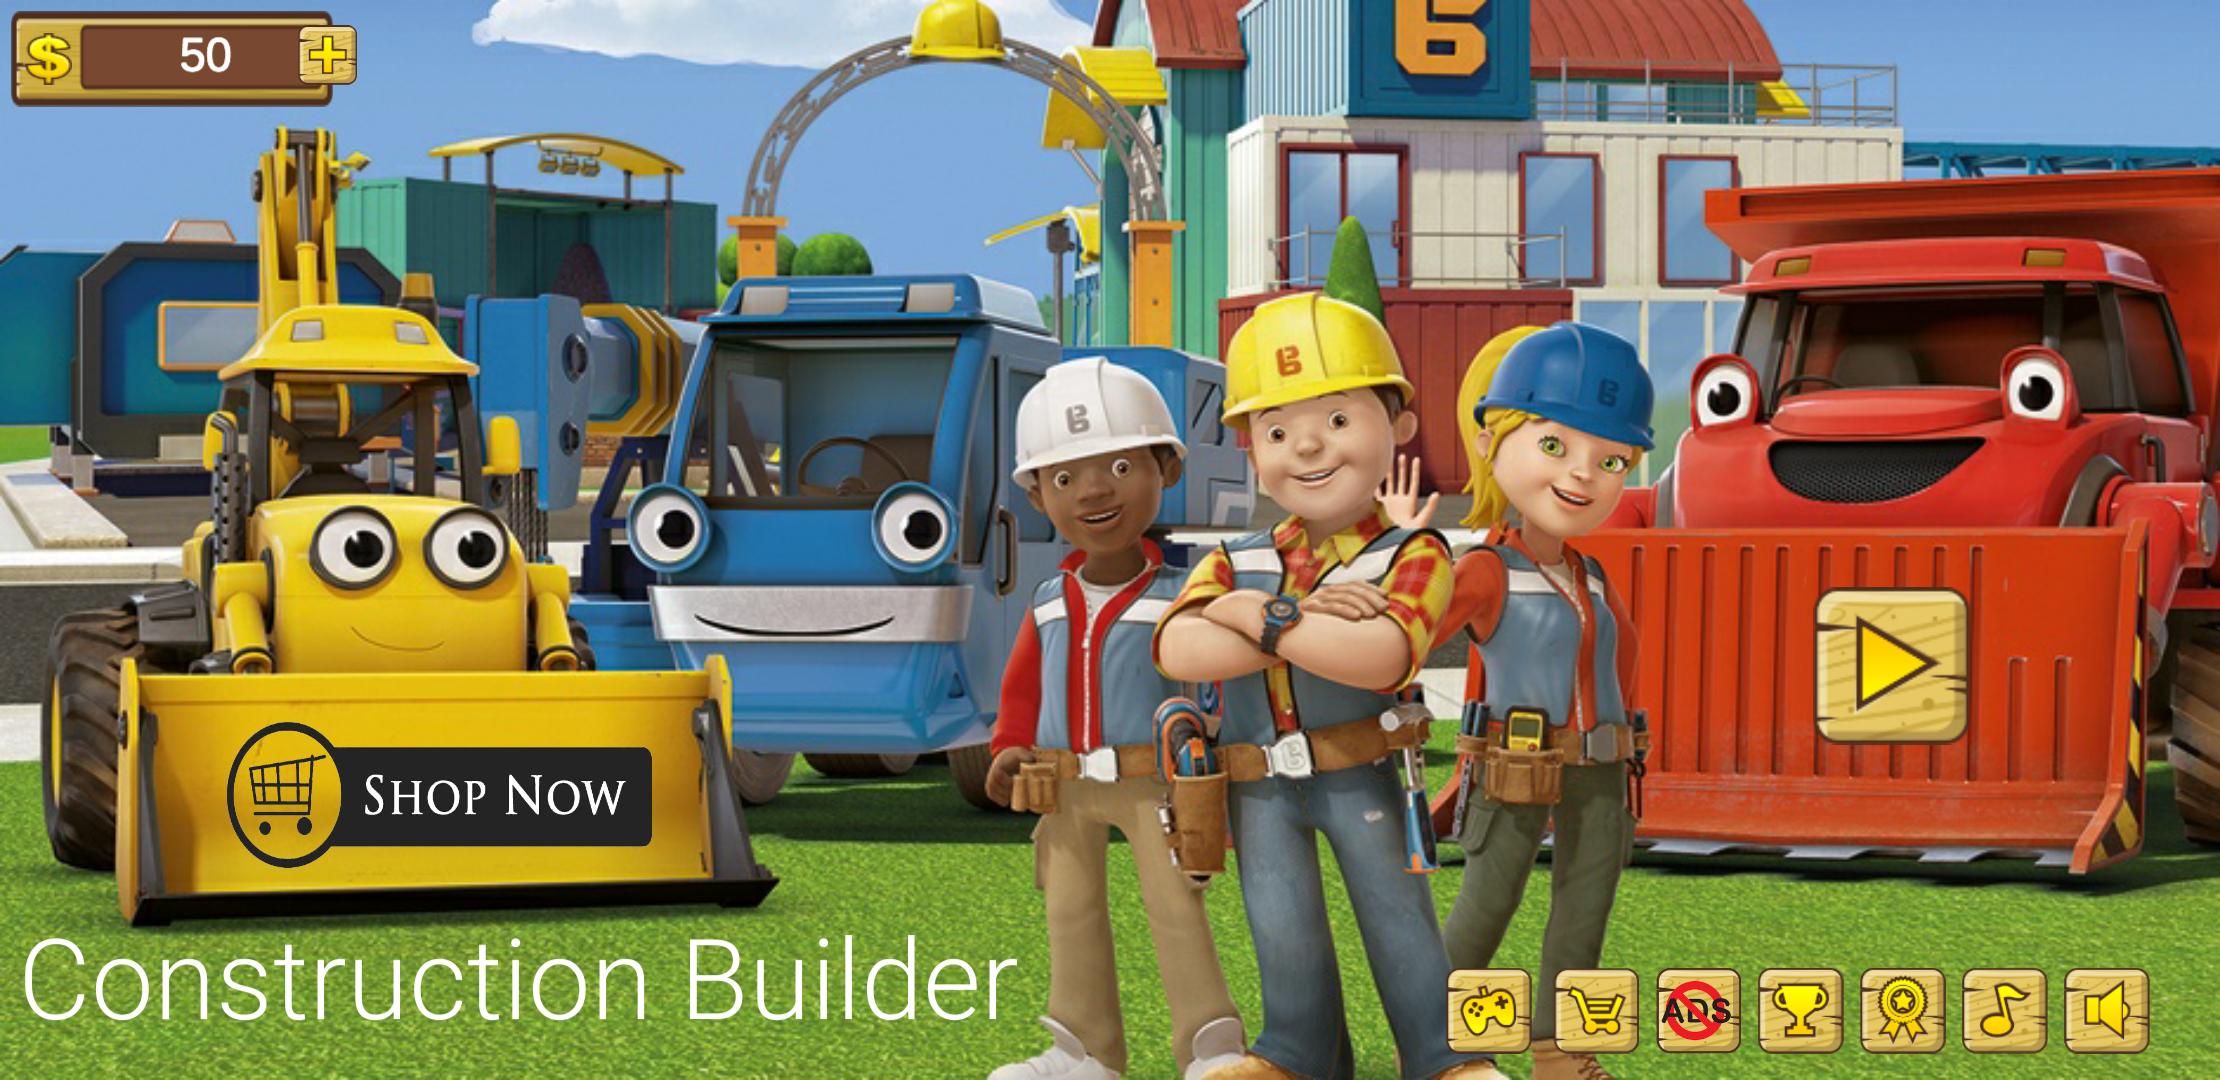 Construction Builder 1.2.6 Screenshot 1